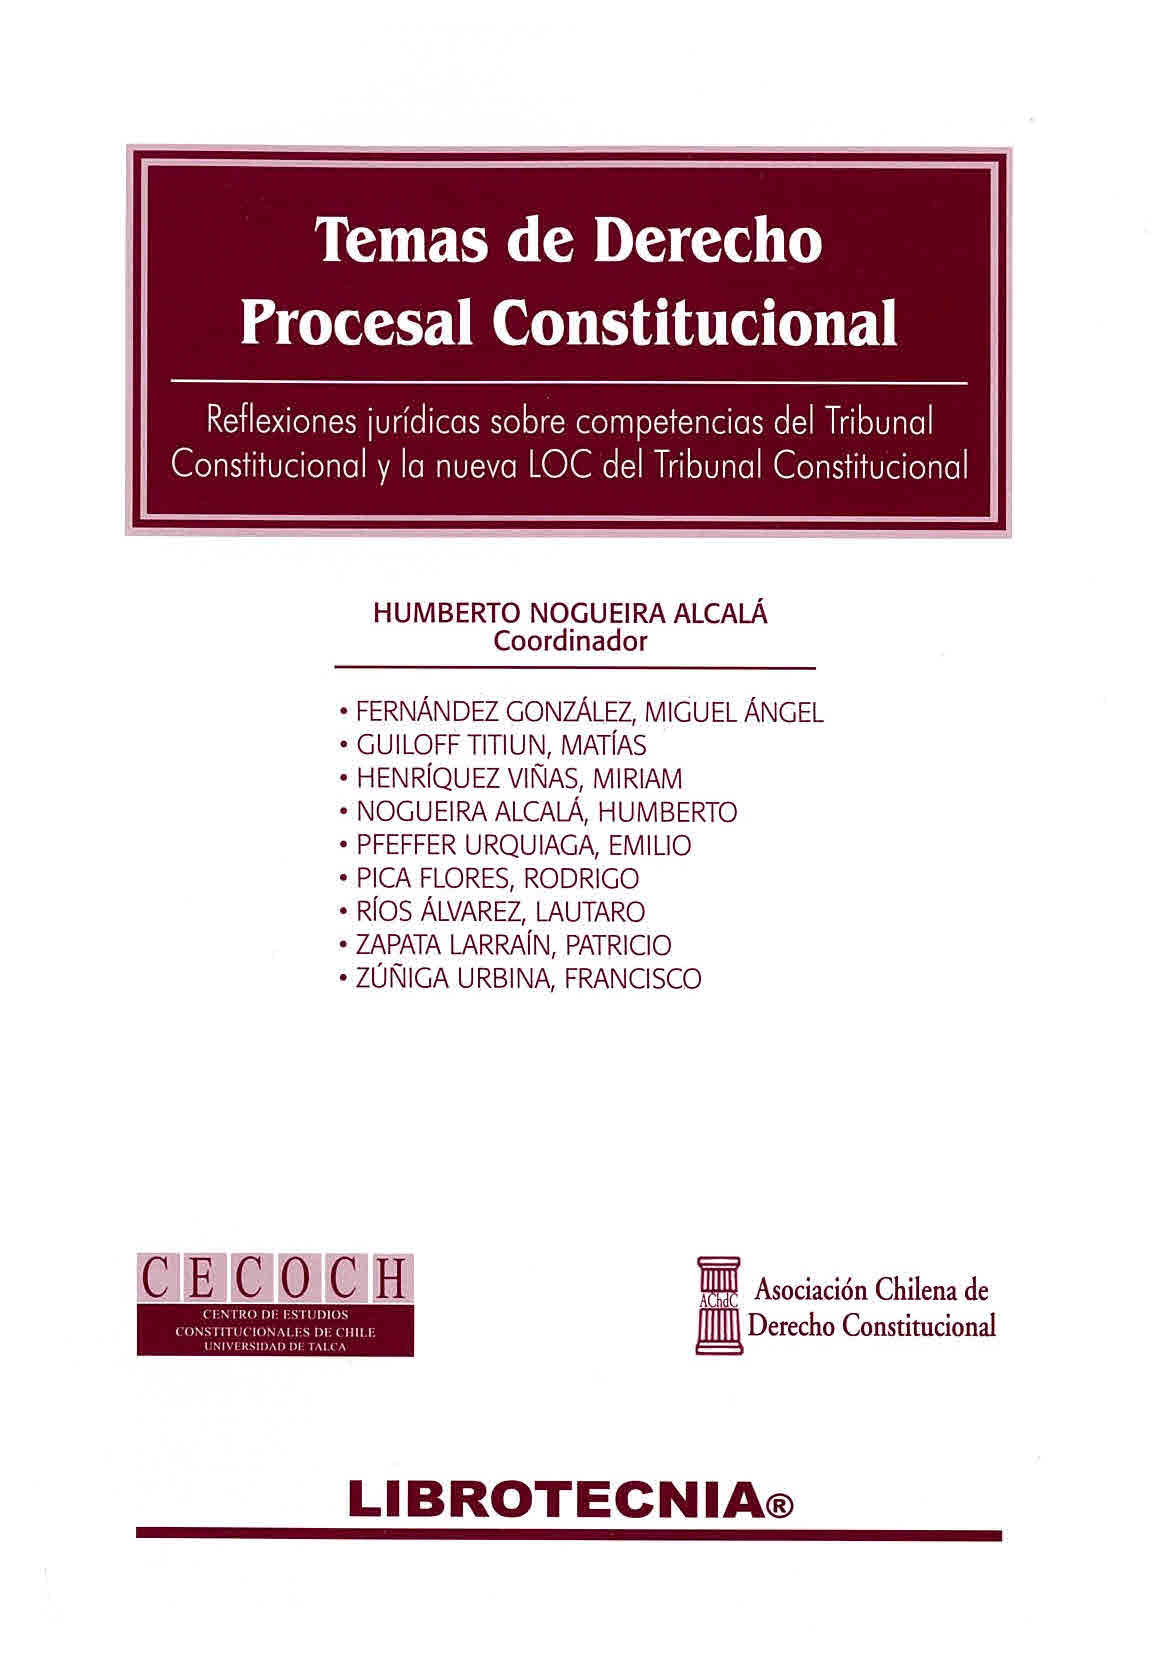 Temas de derecho procesal constitucional. Reflexiones jurídicas sobre Competencias del Tribunal Constitucional y la nueva LOC del Tribunal Constitucional